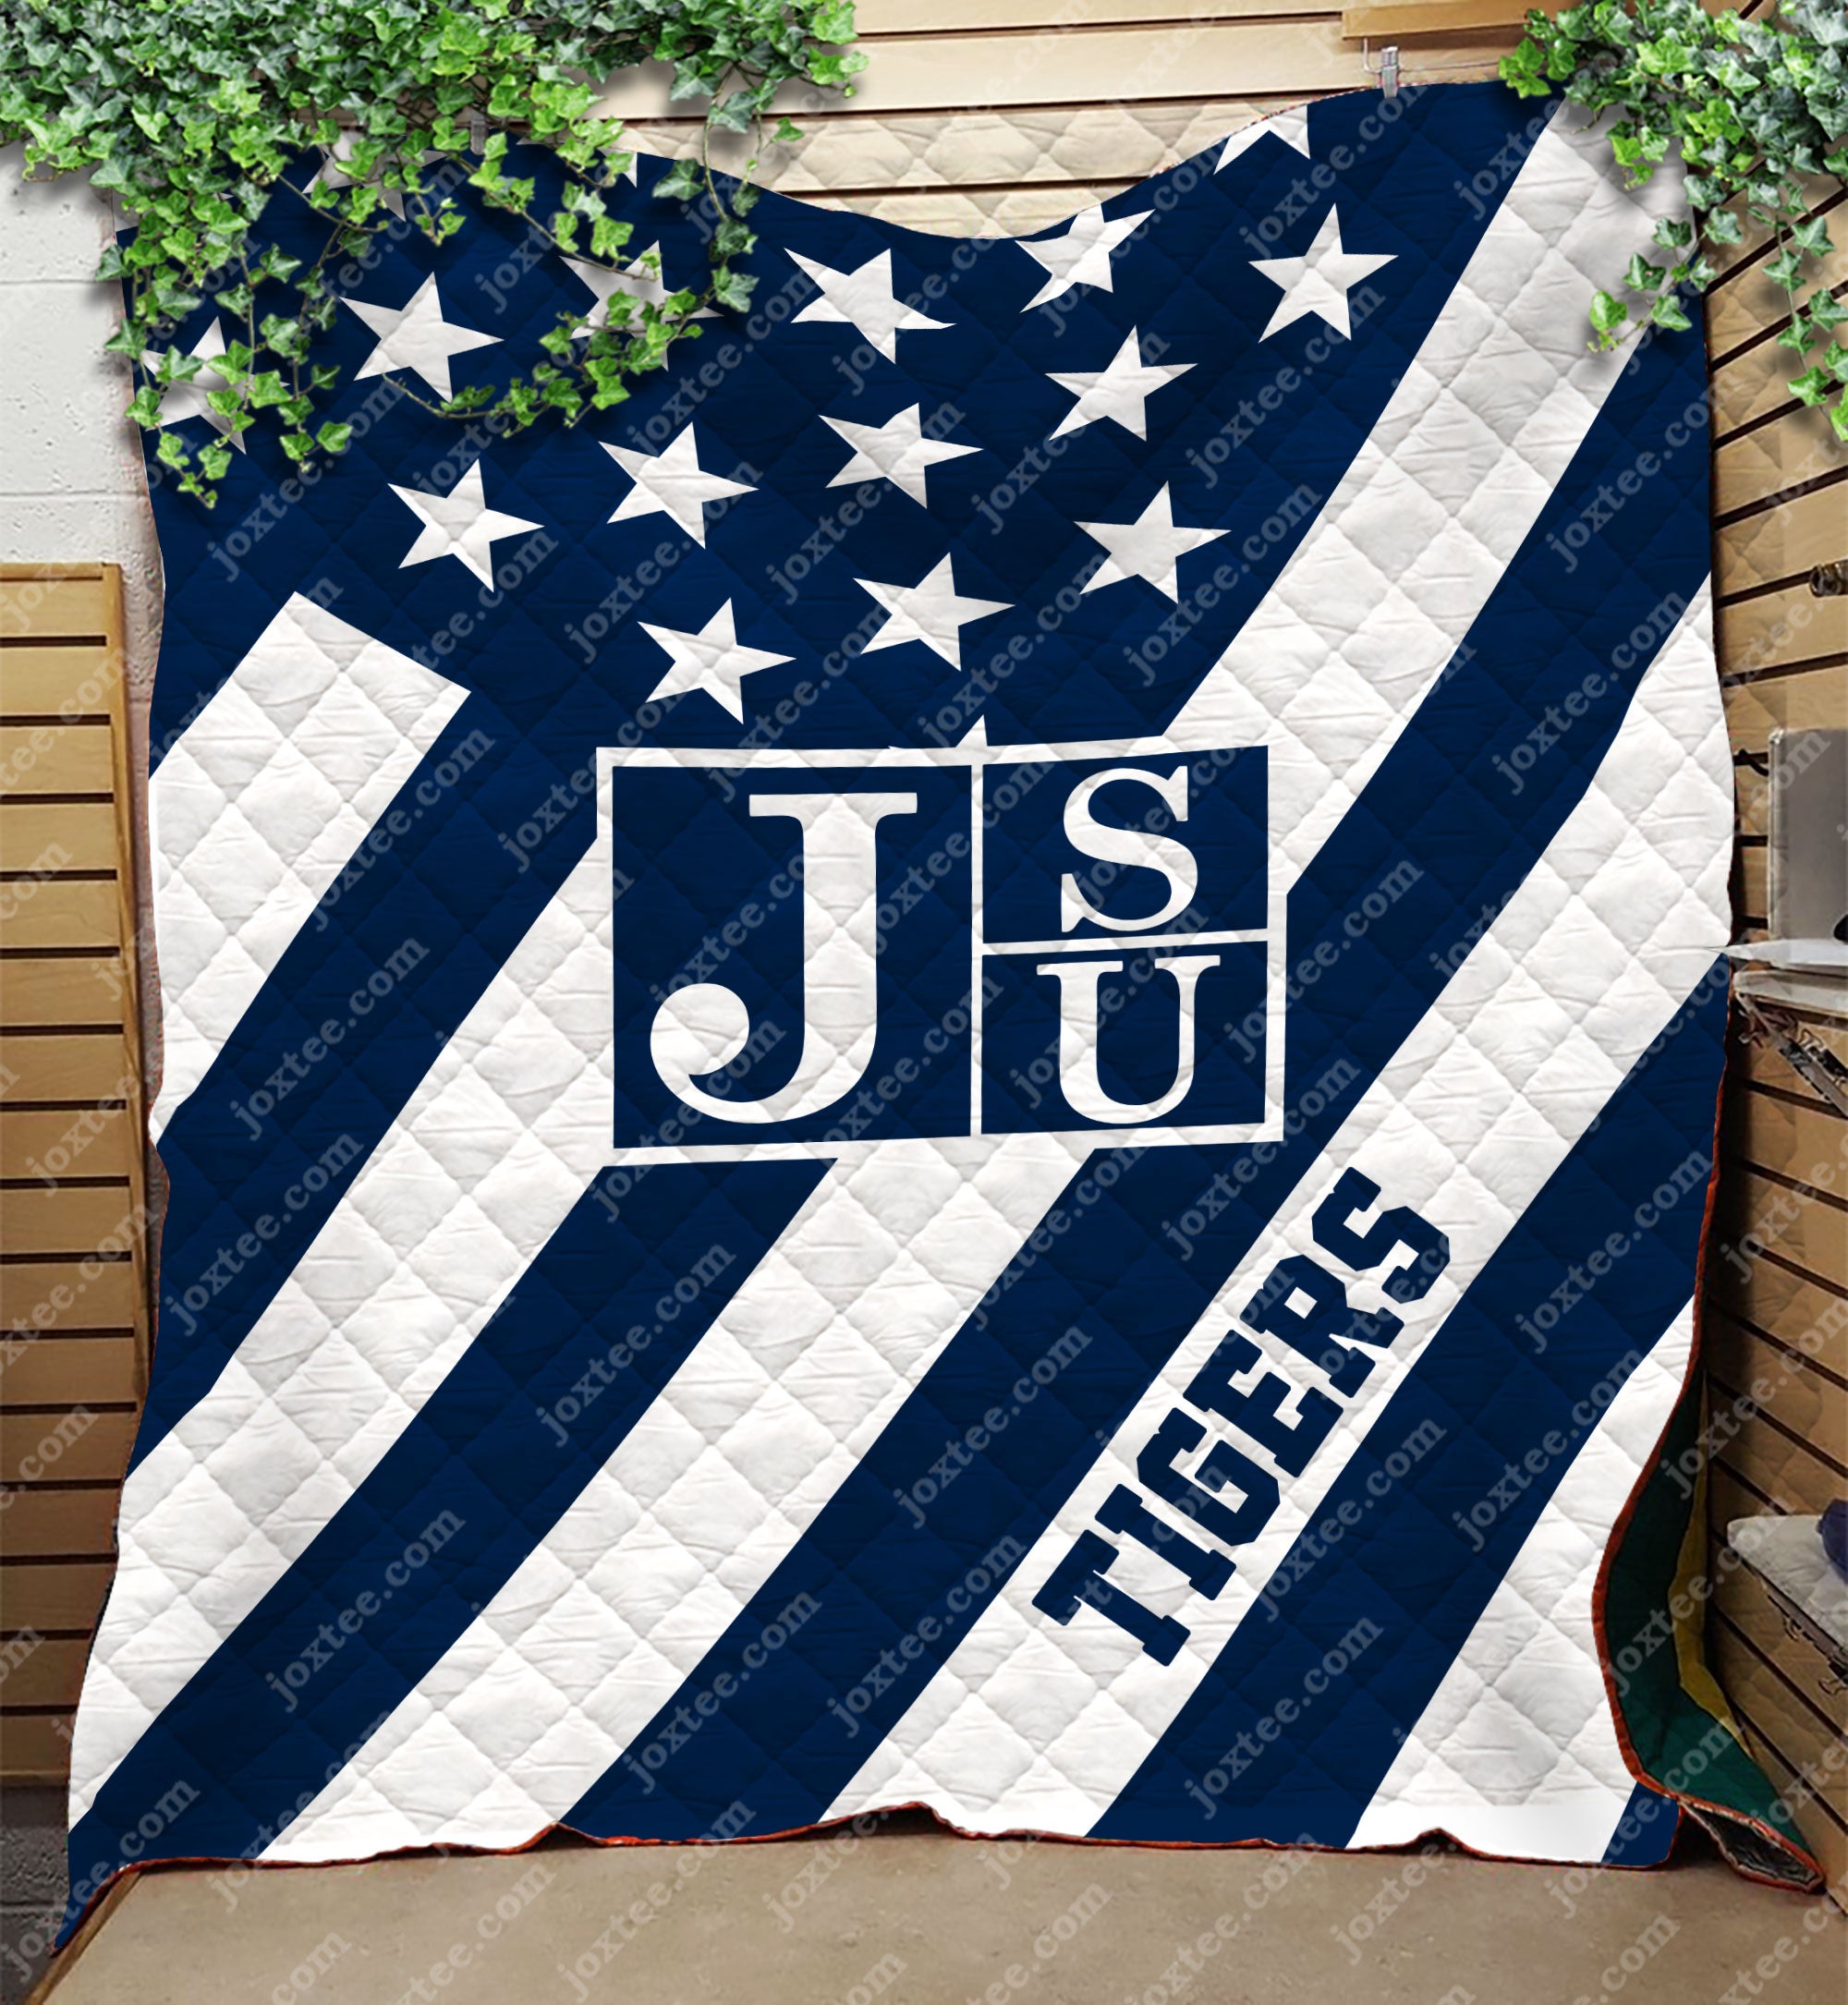 Jsu Tigers Quilt Blanket v73